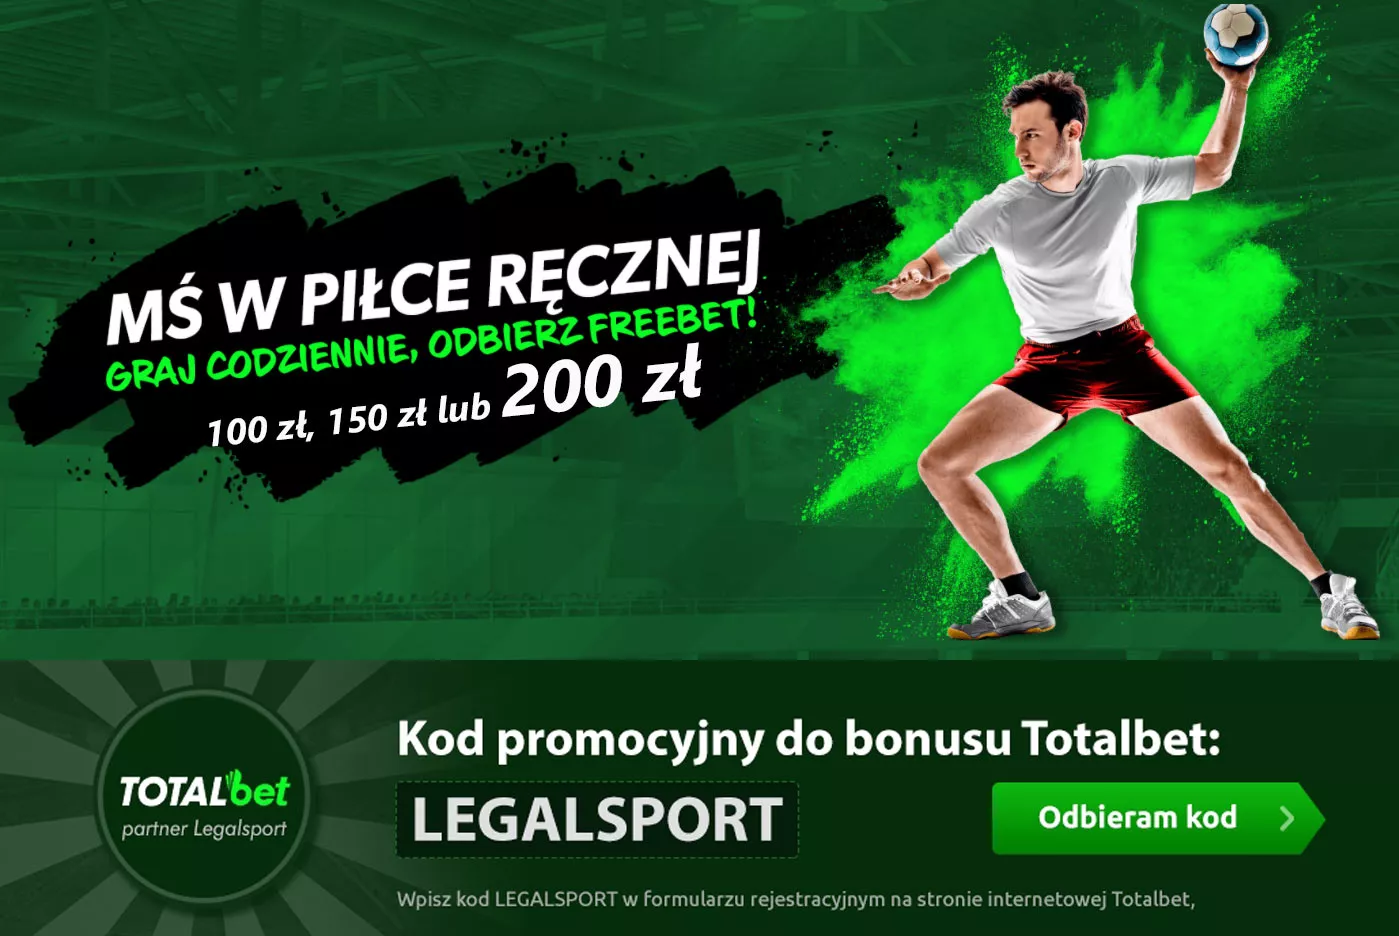 Bonus na zakłady - freebet 200 zł za obstawianie handballu